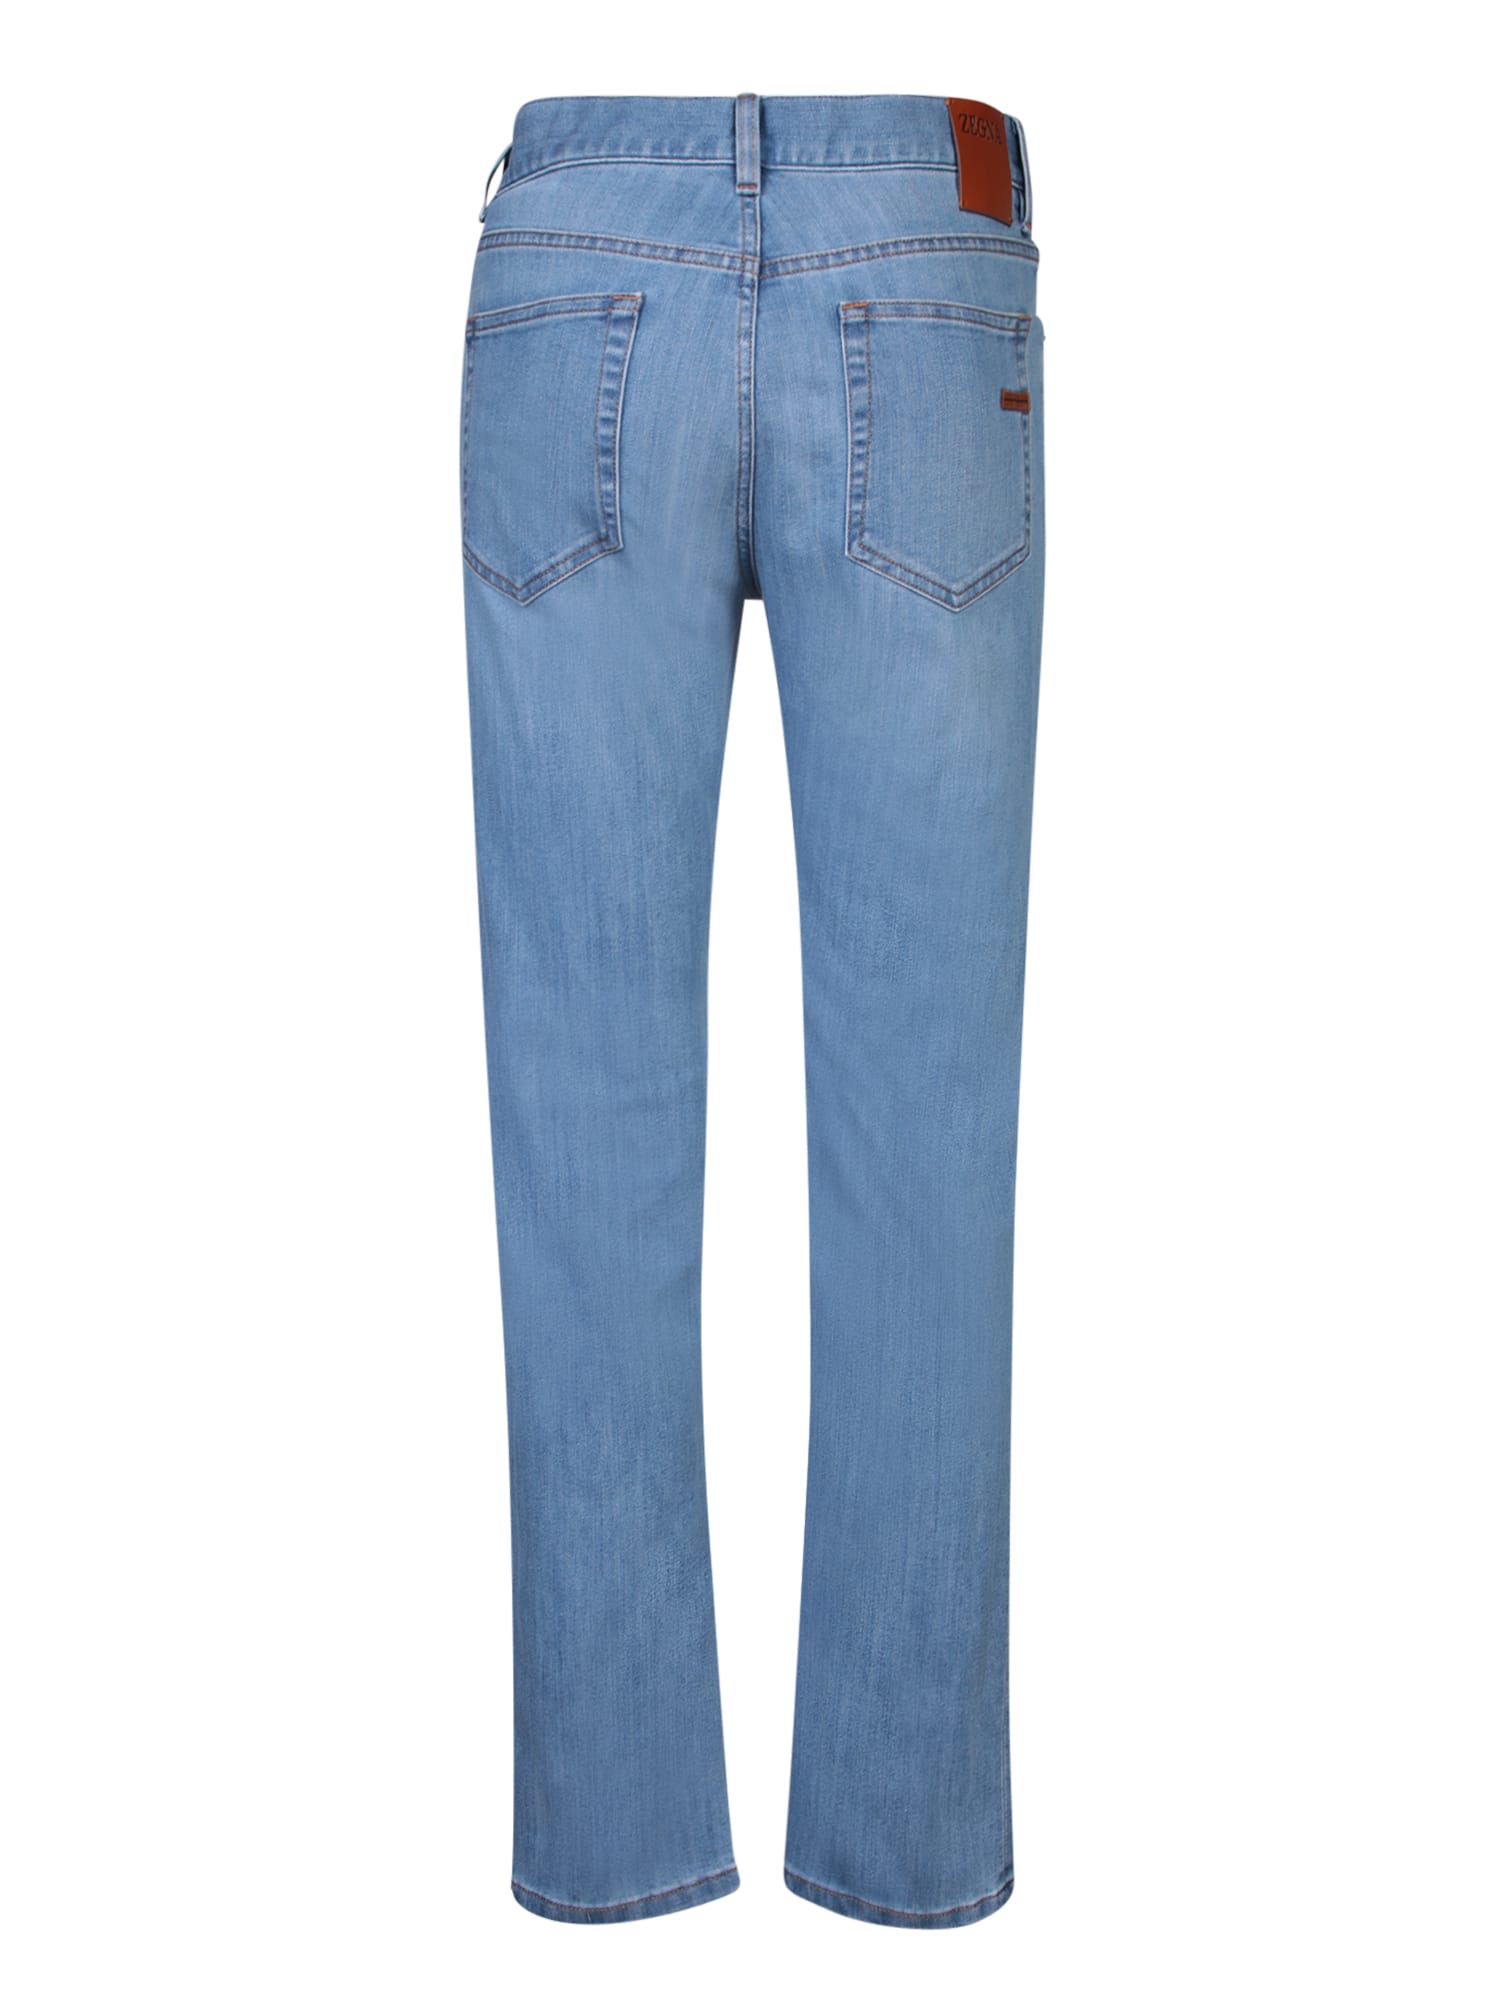 Shop Zegna City Denim Blue Jeans